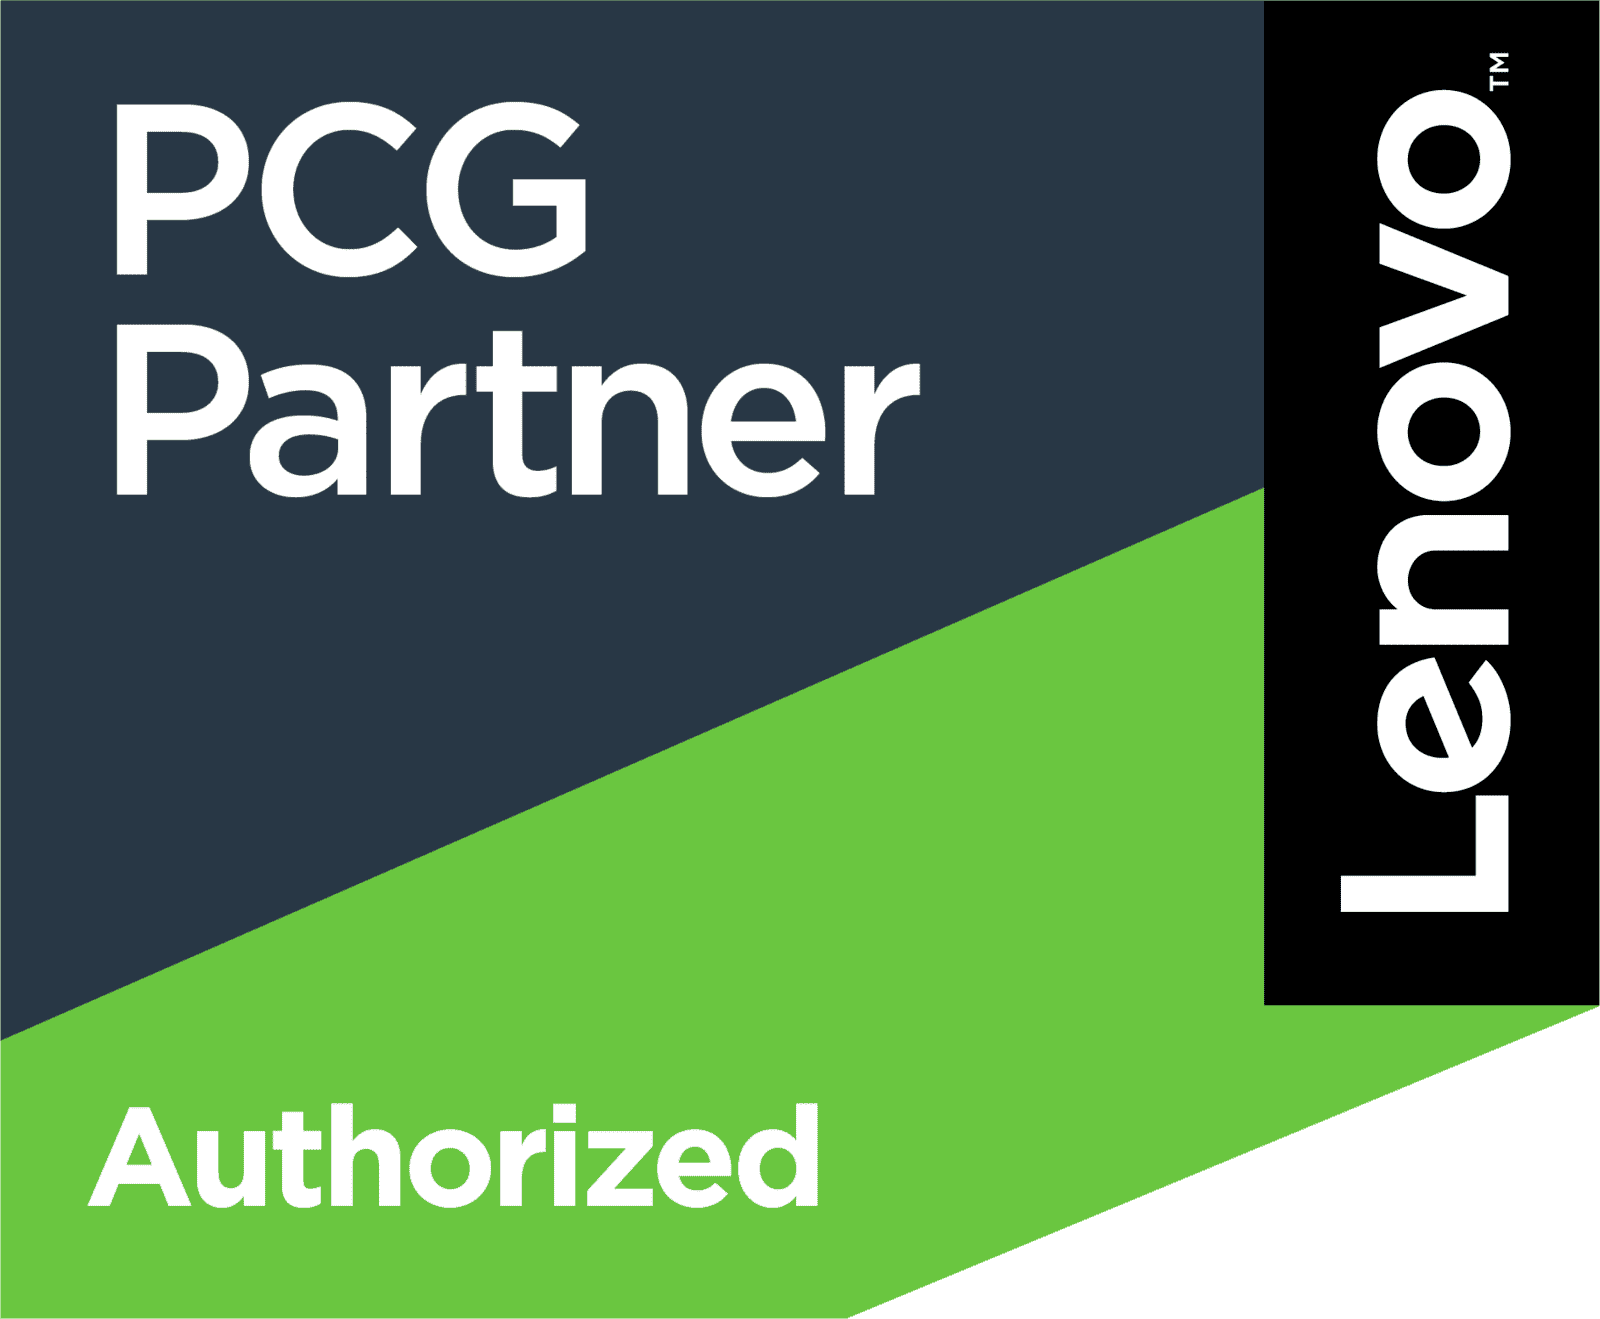 lenovo authorized partner logo in green black white and navy blue